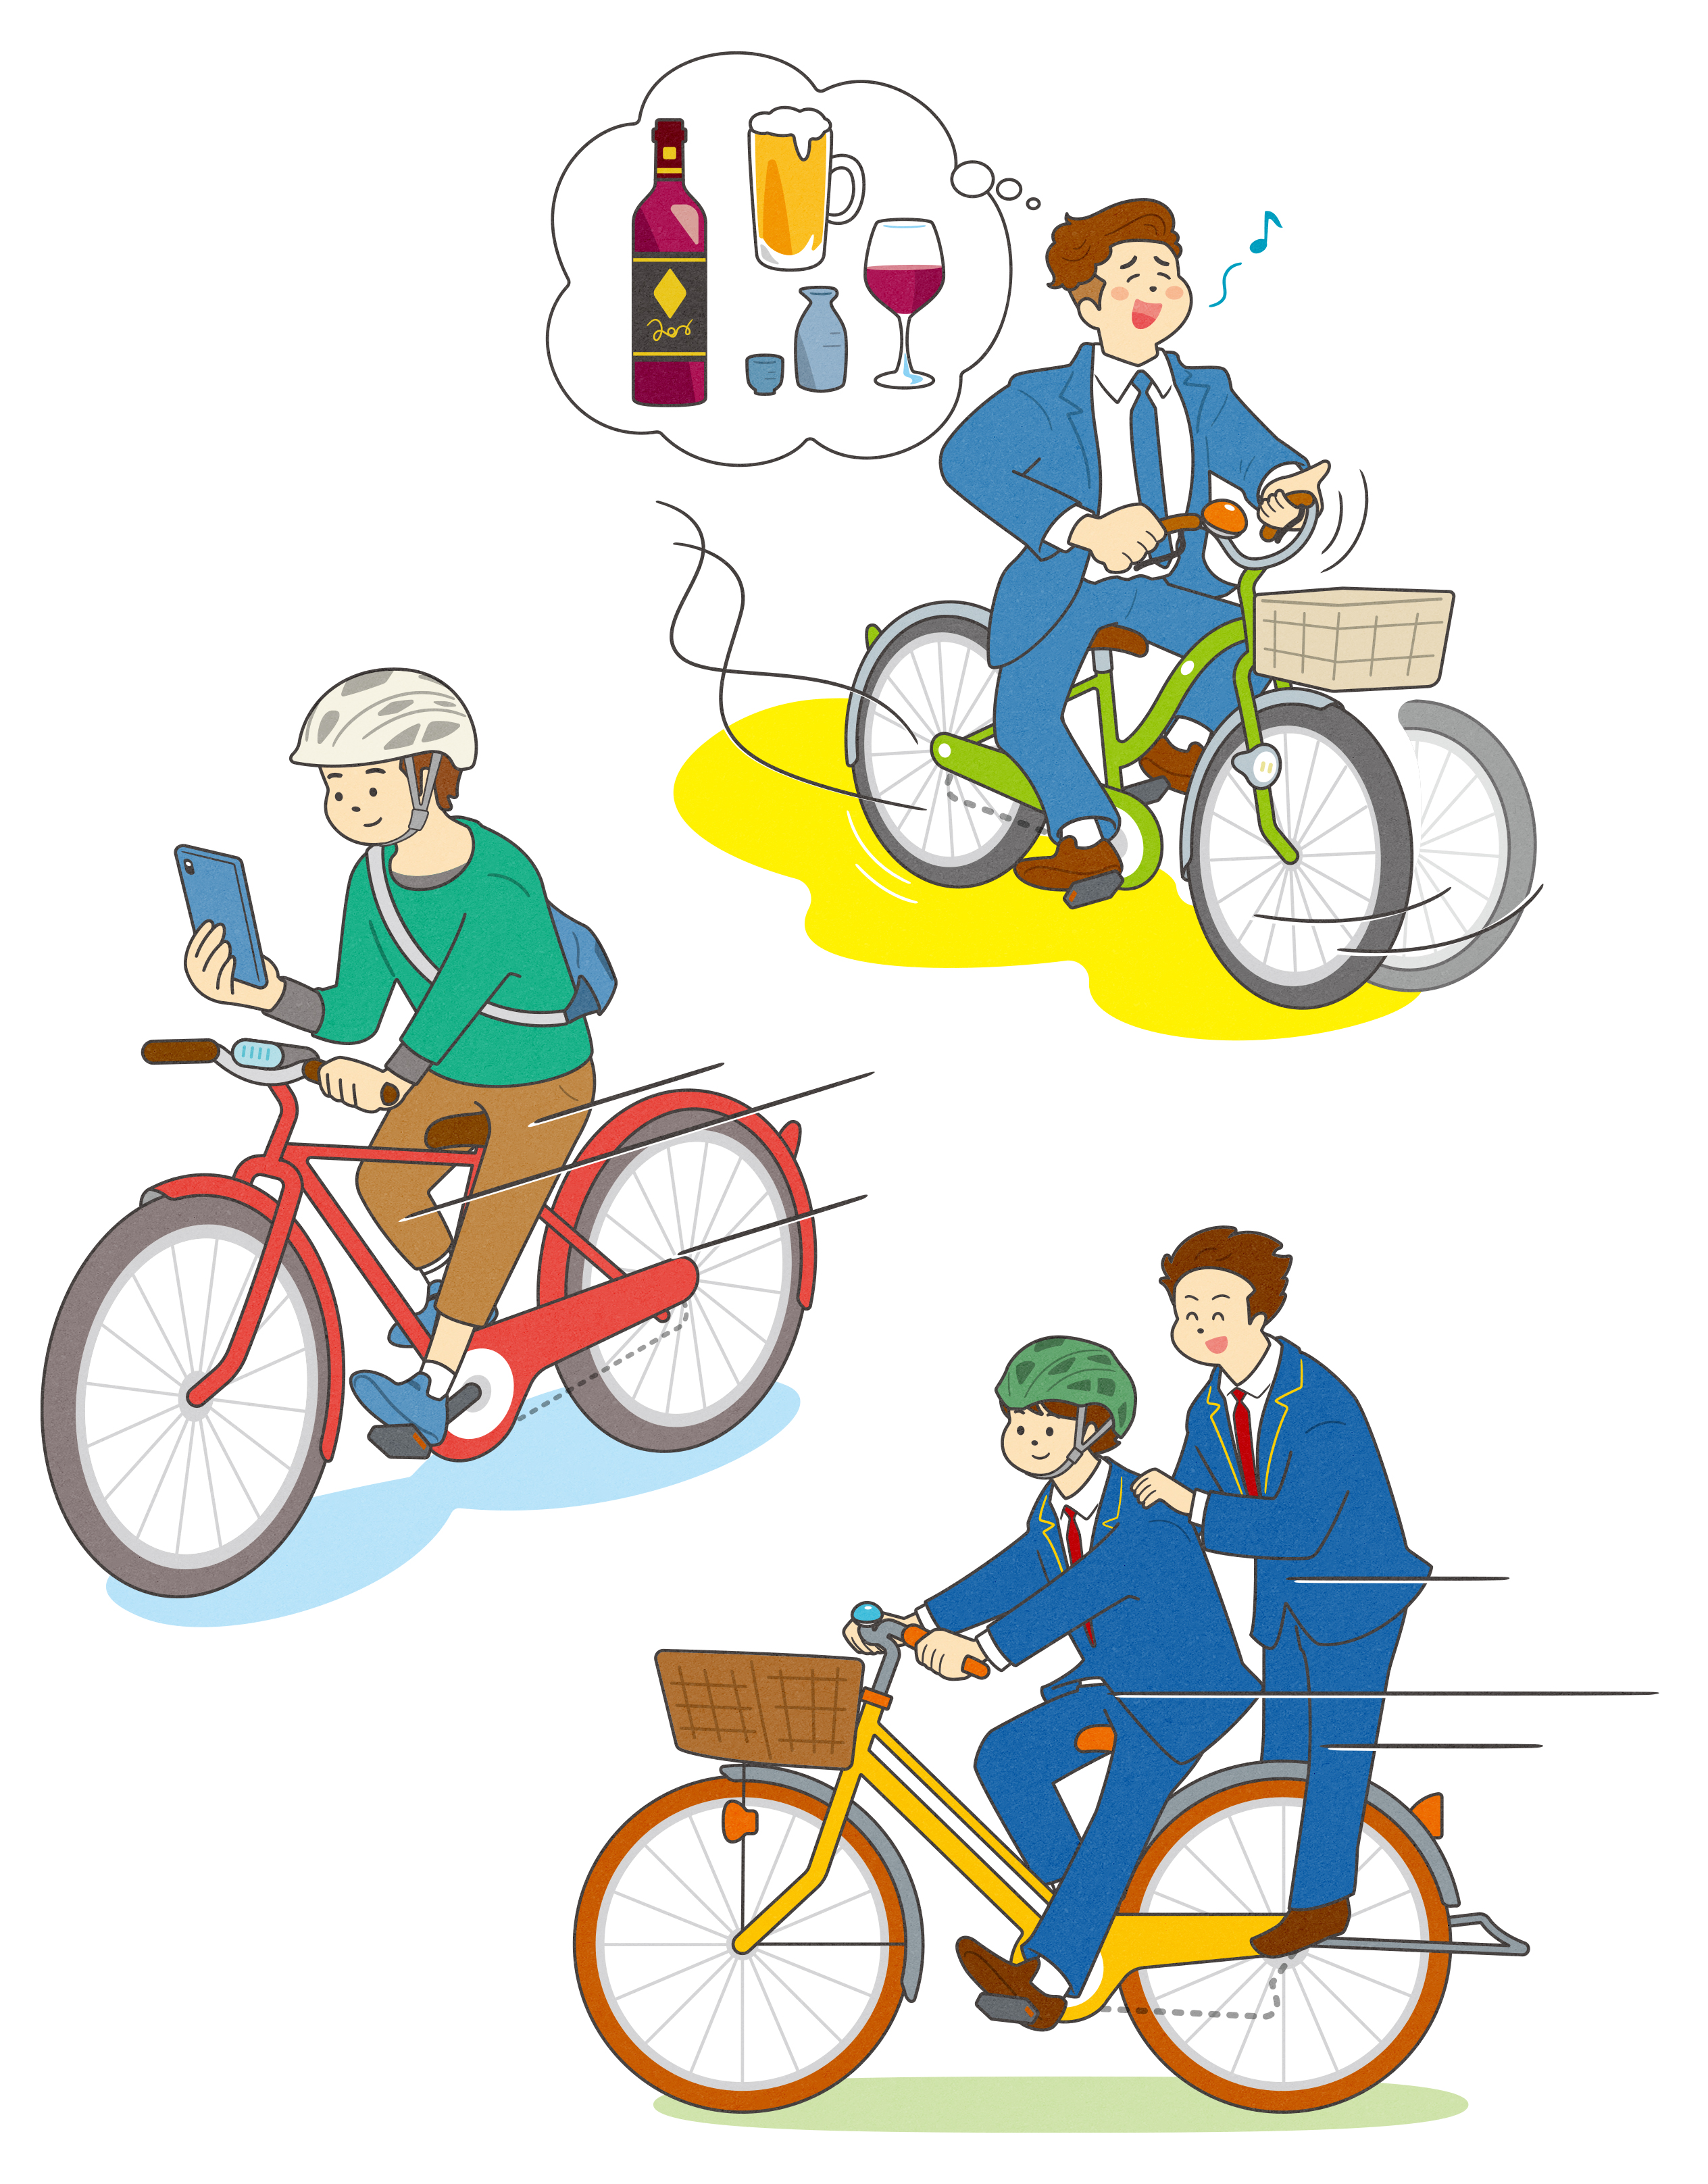 特定小型原動機付自転車運転者講習(仮称)及び自転車運転者講習